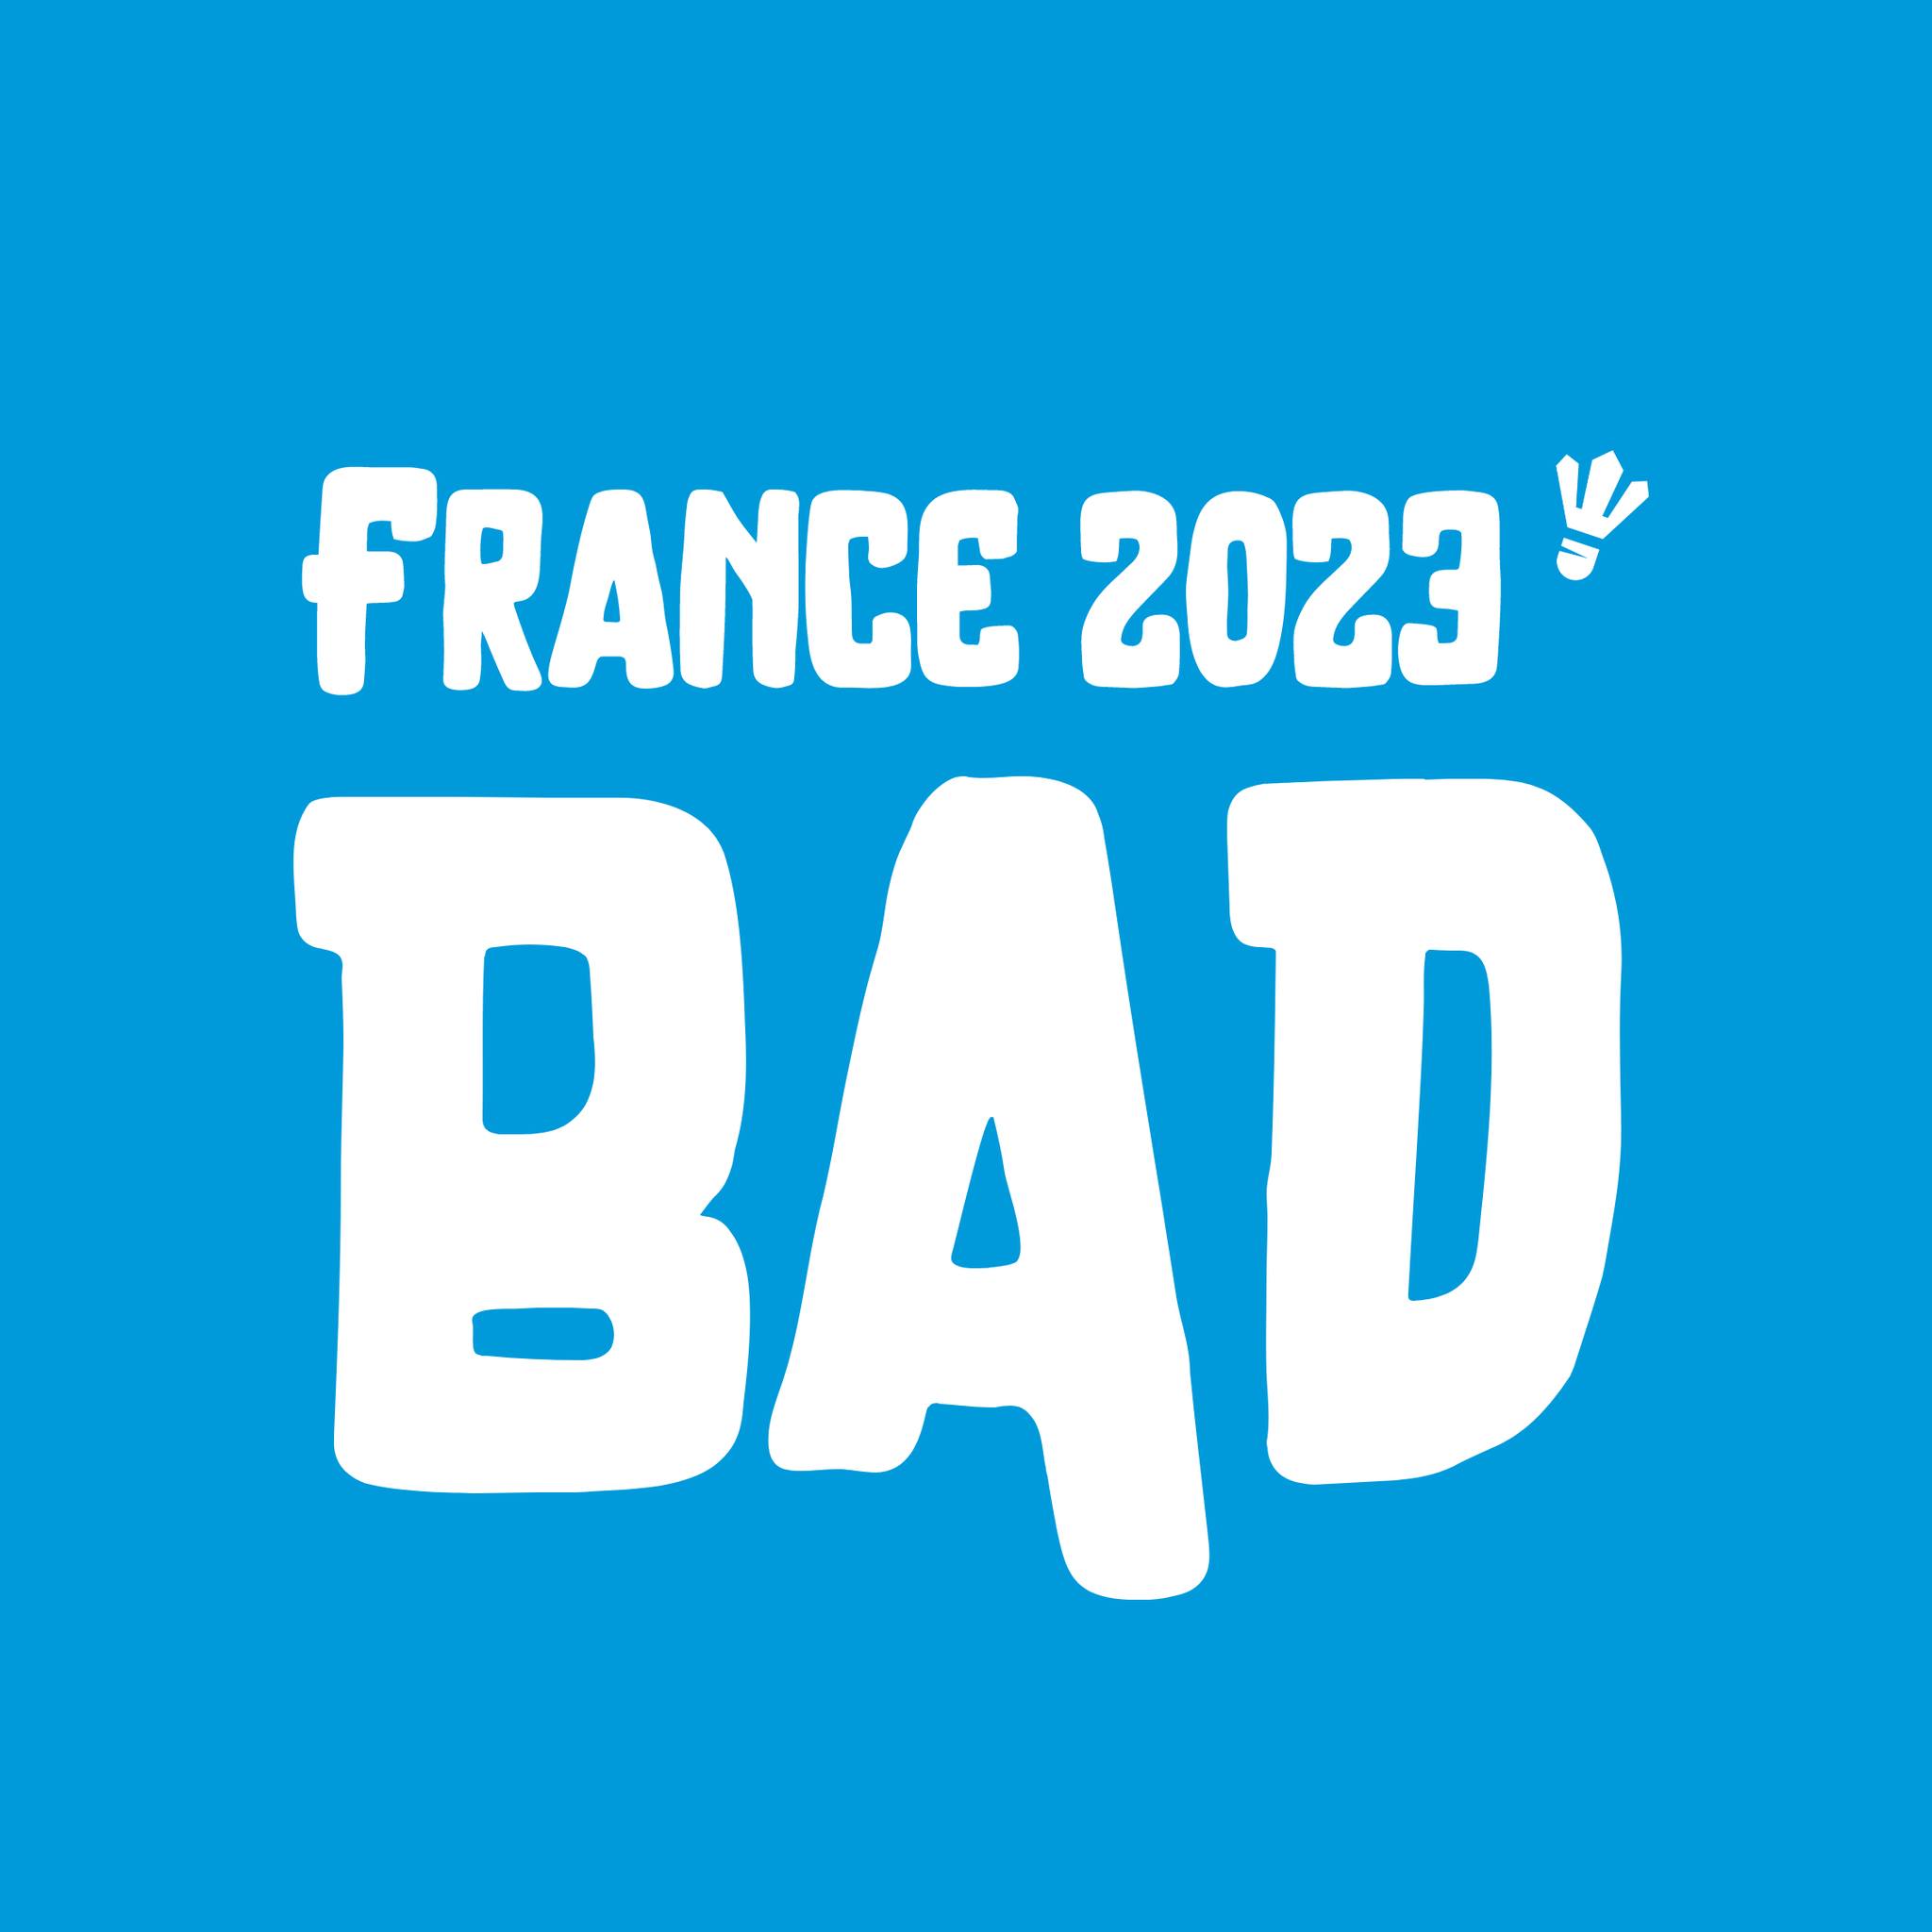 Le club est partenaire avec les championnats de France 2023 !